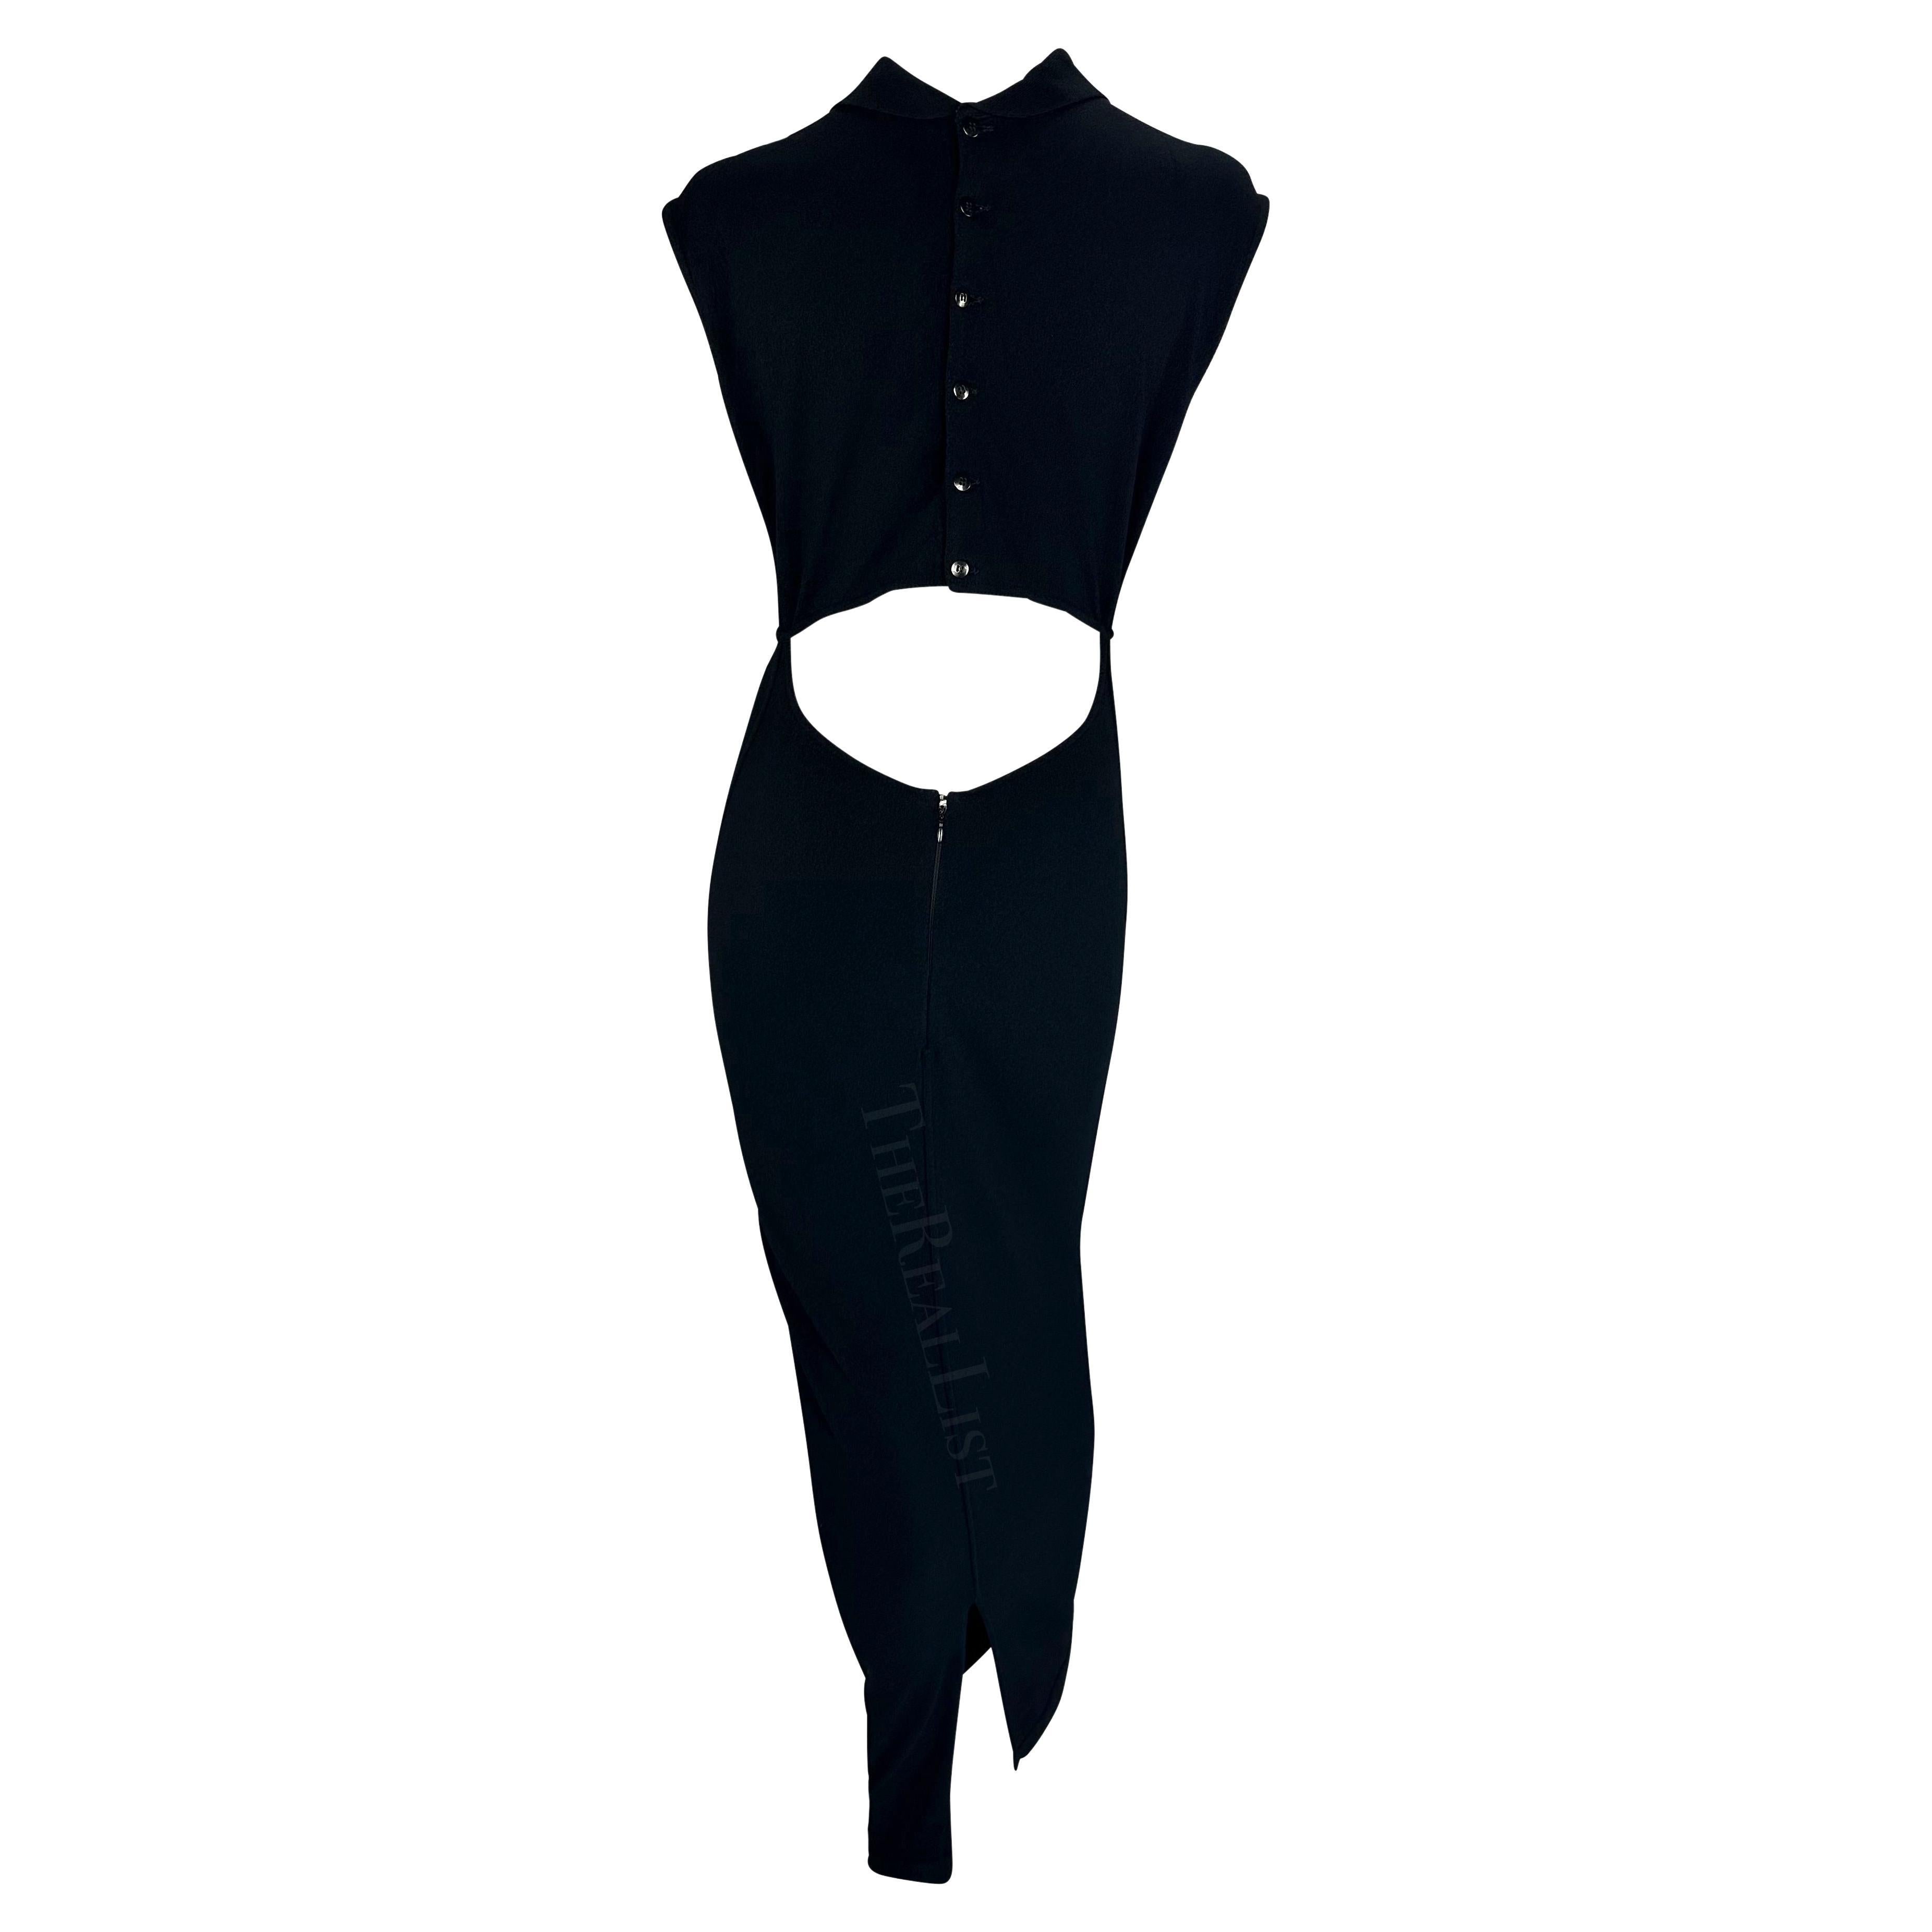 S/S 1989 Azzedine Alaïa Runway Black Cutout Collar Knit Bodycon Stretch Dress For Sale